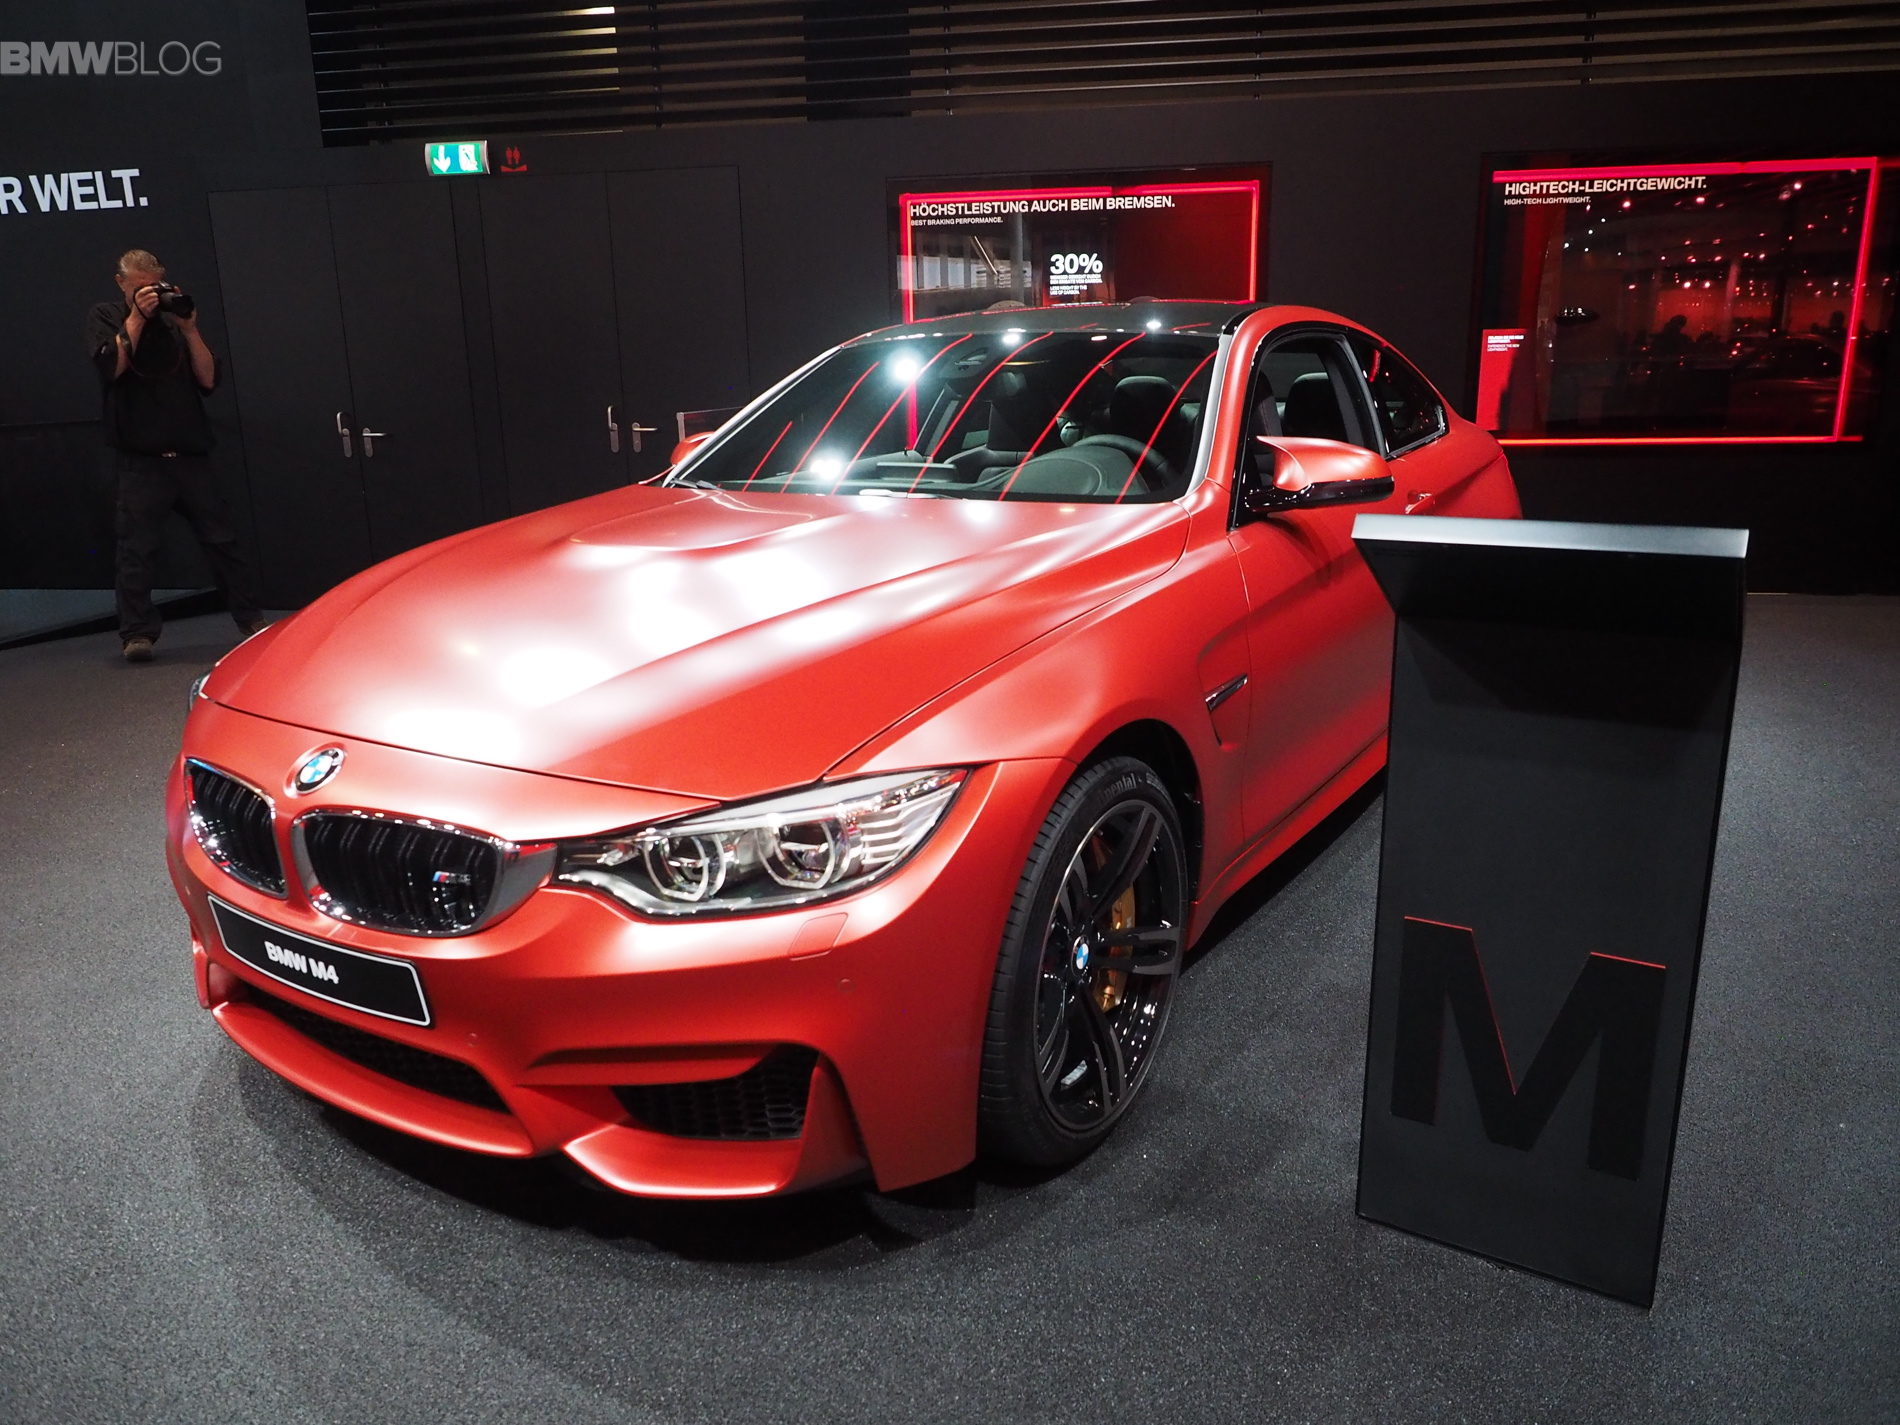 BMW M4 in Frozen Red Metallic shows up in Frankfurt